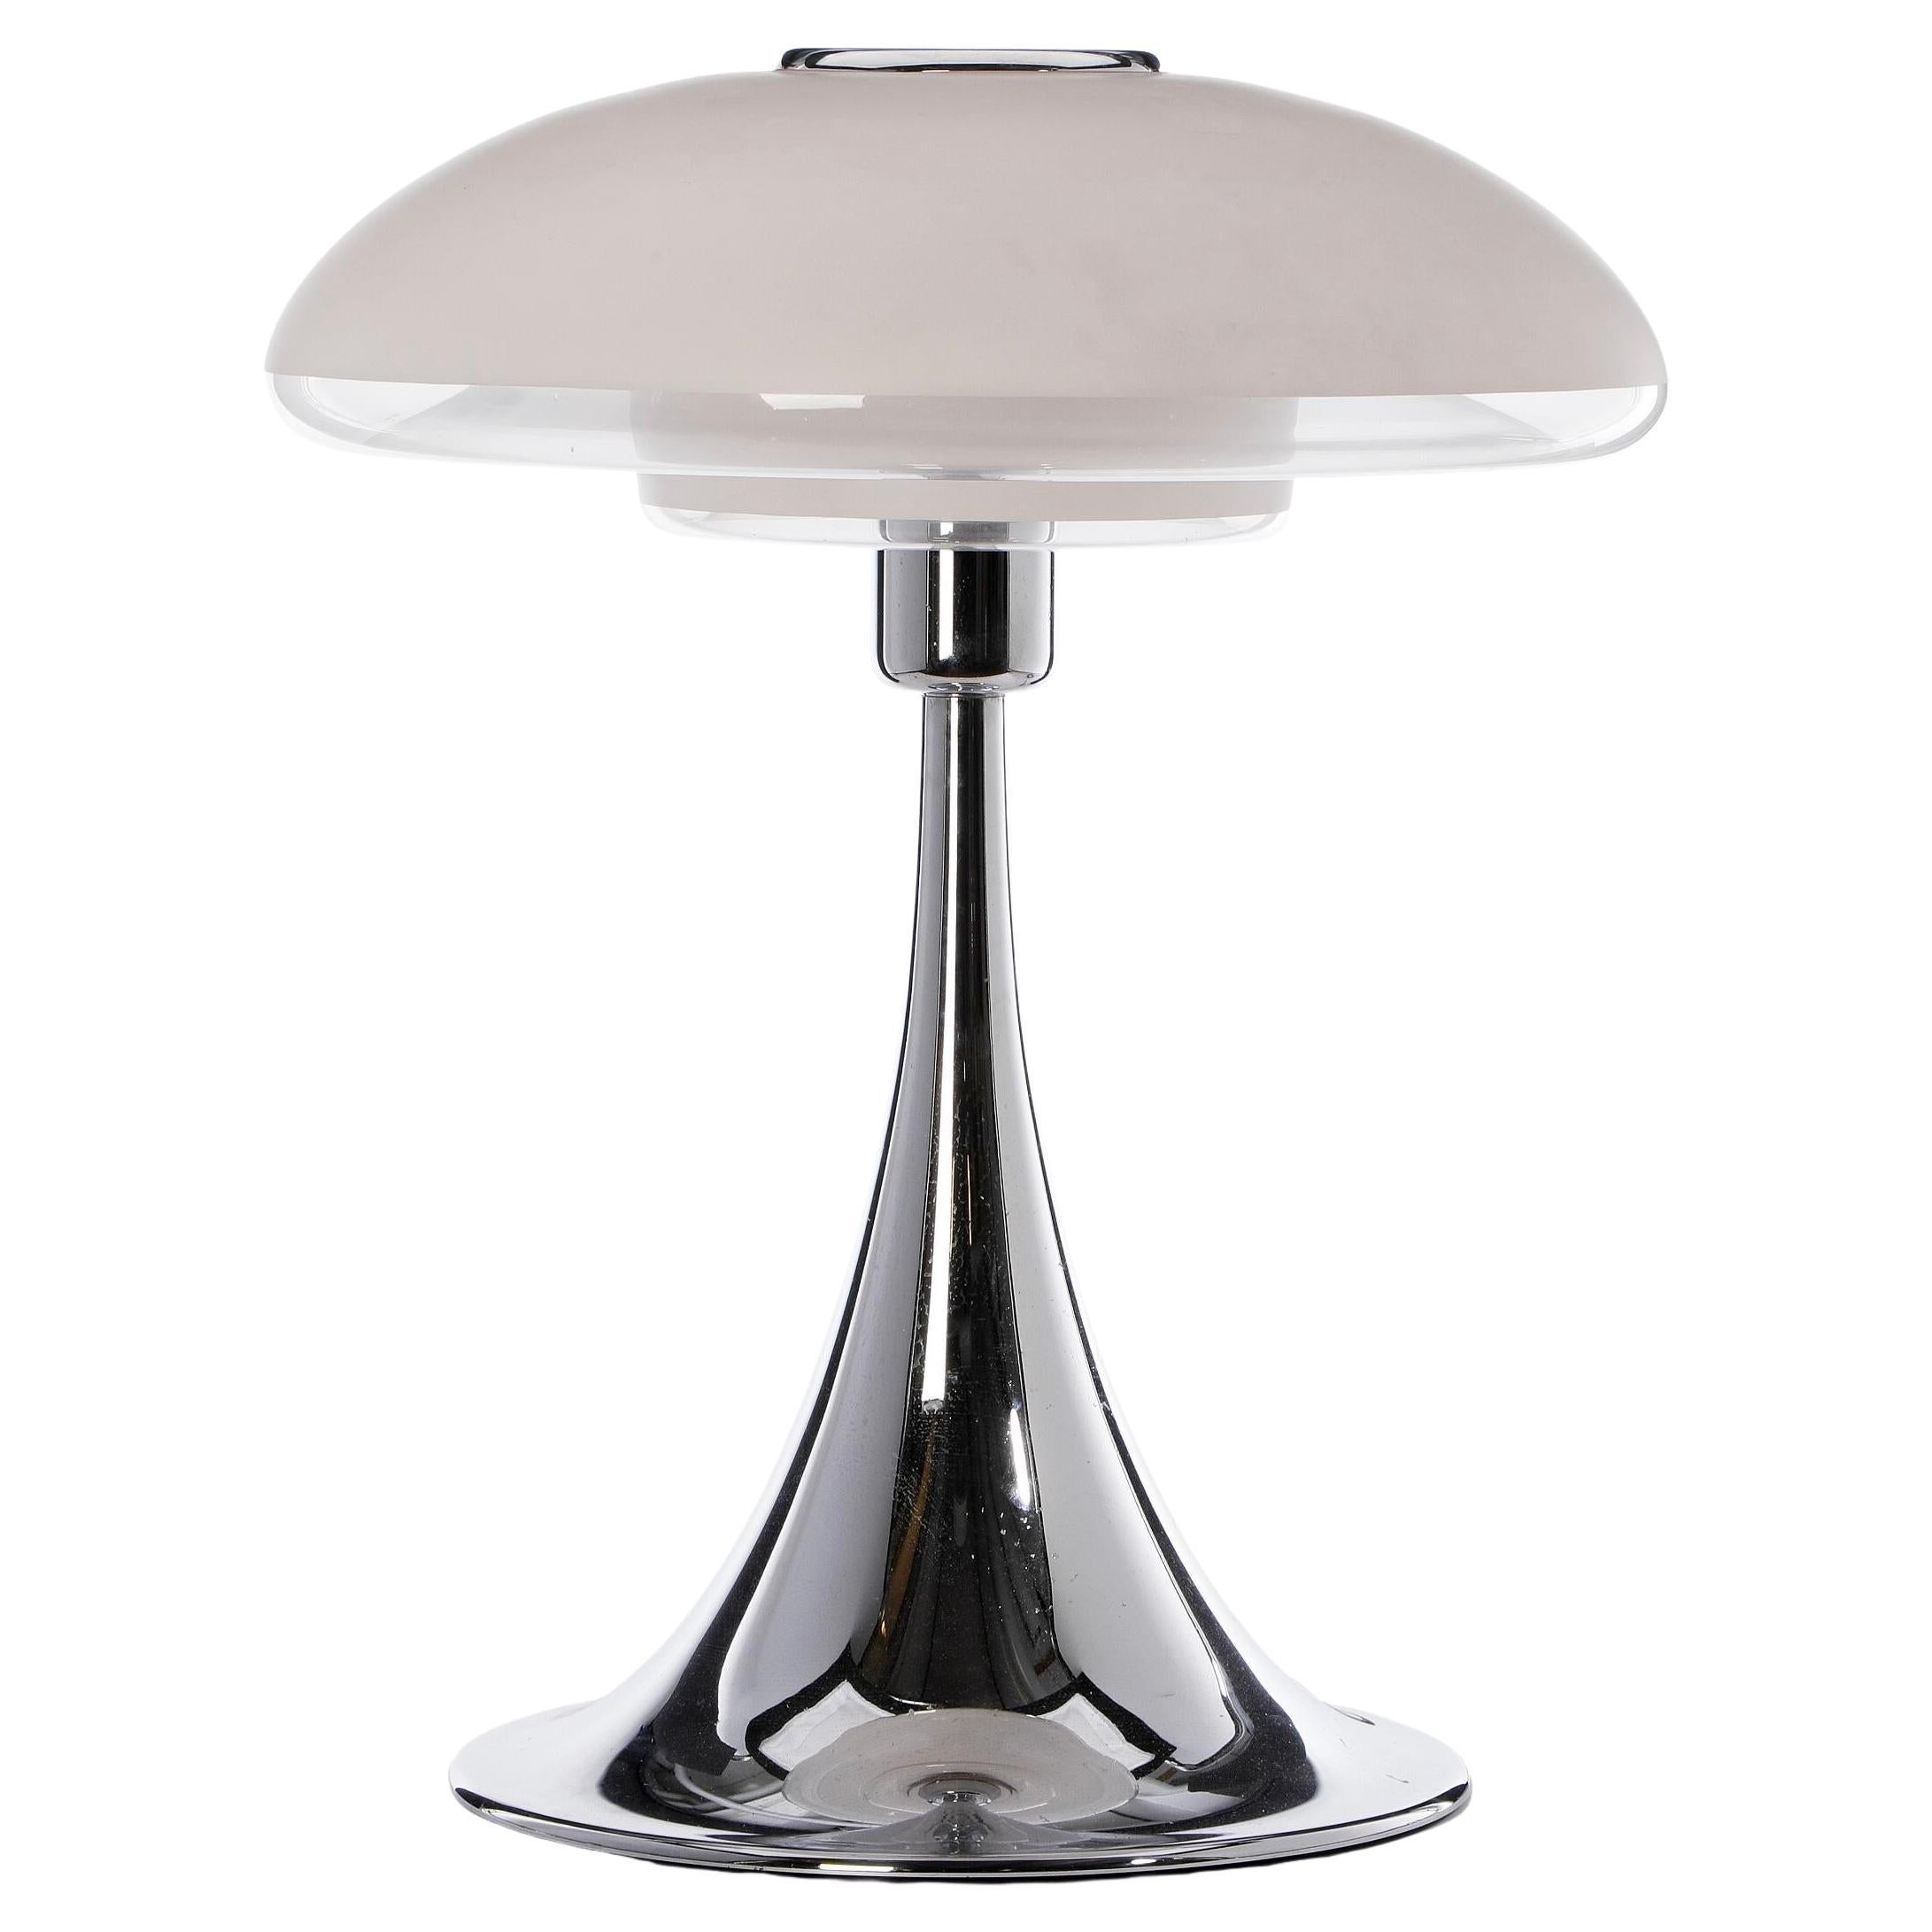 Large 1970s Verner Panton "VP Europa" table lamp in opaline glass, chromed base.